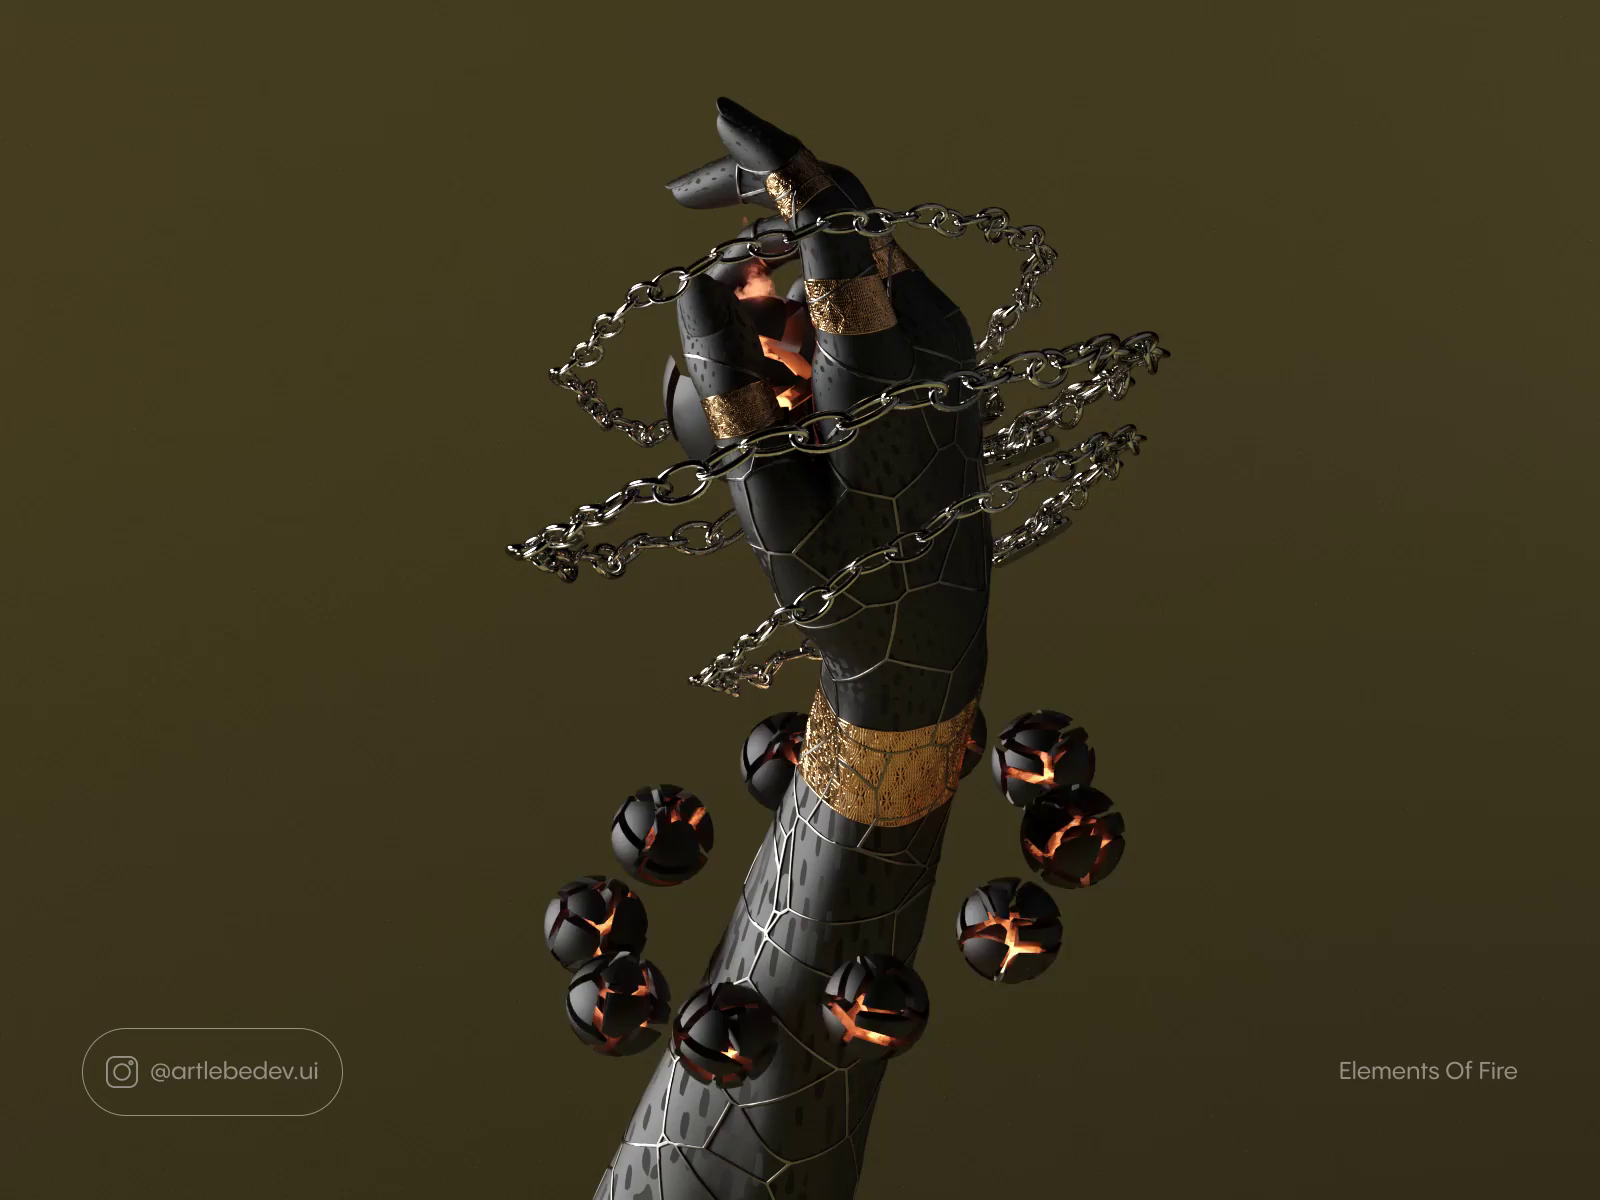 Elements of Fire, 3D Motion/NFT by Artemiy Lebedev on Dribbble